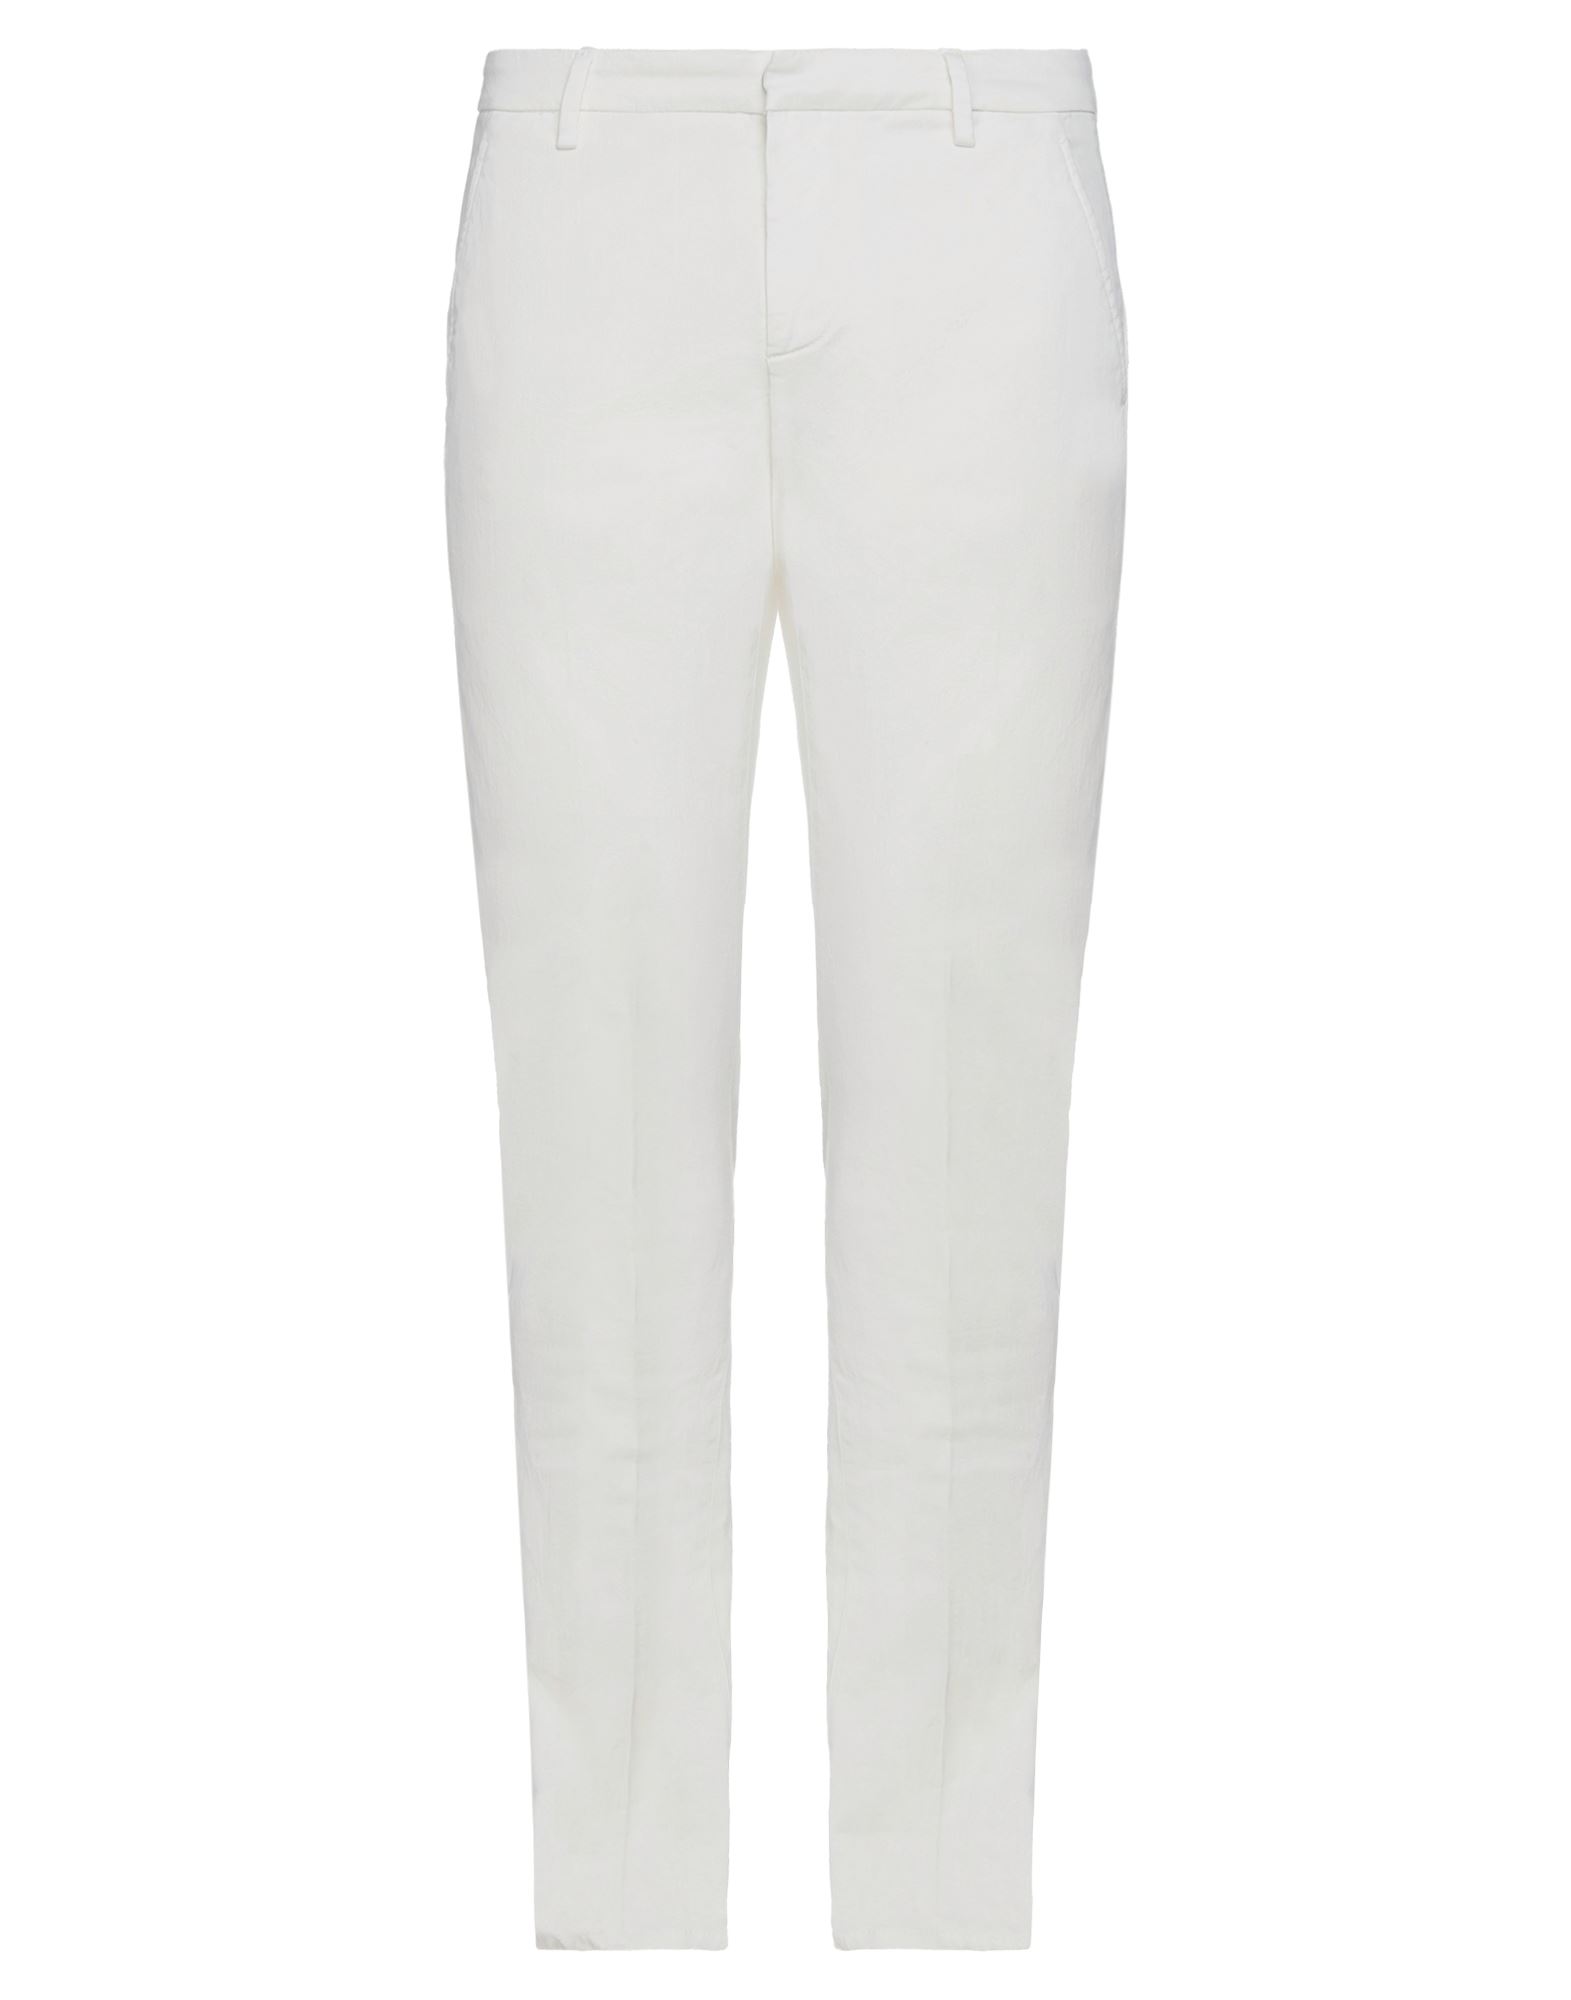 Shop Dondup Man Pants White Size 29 Cotton, Elastane